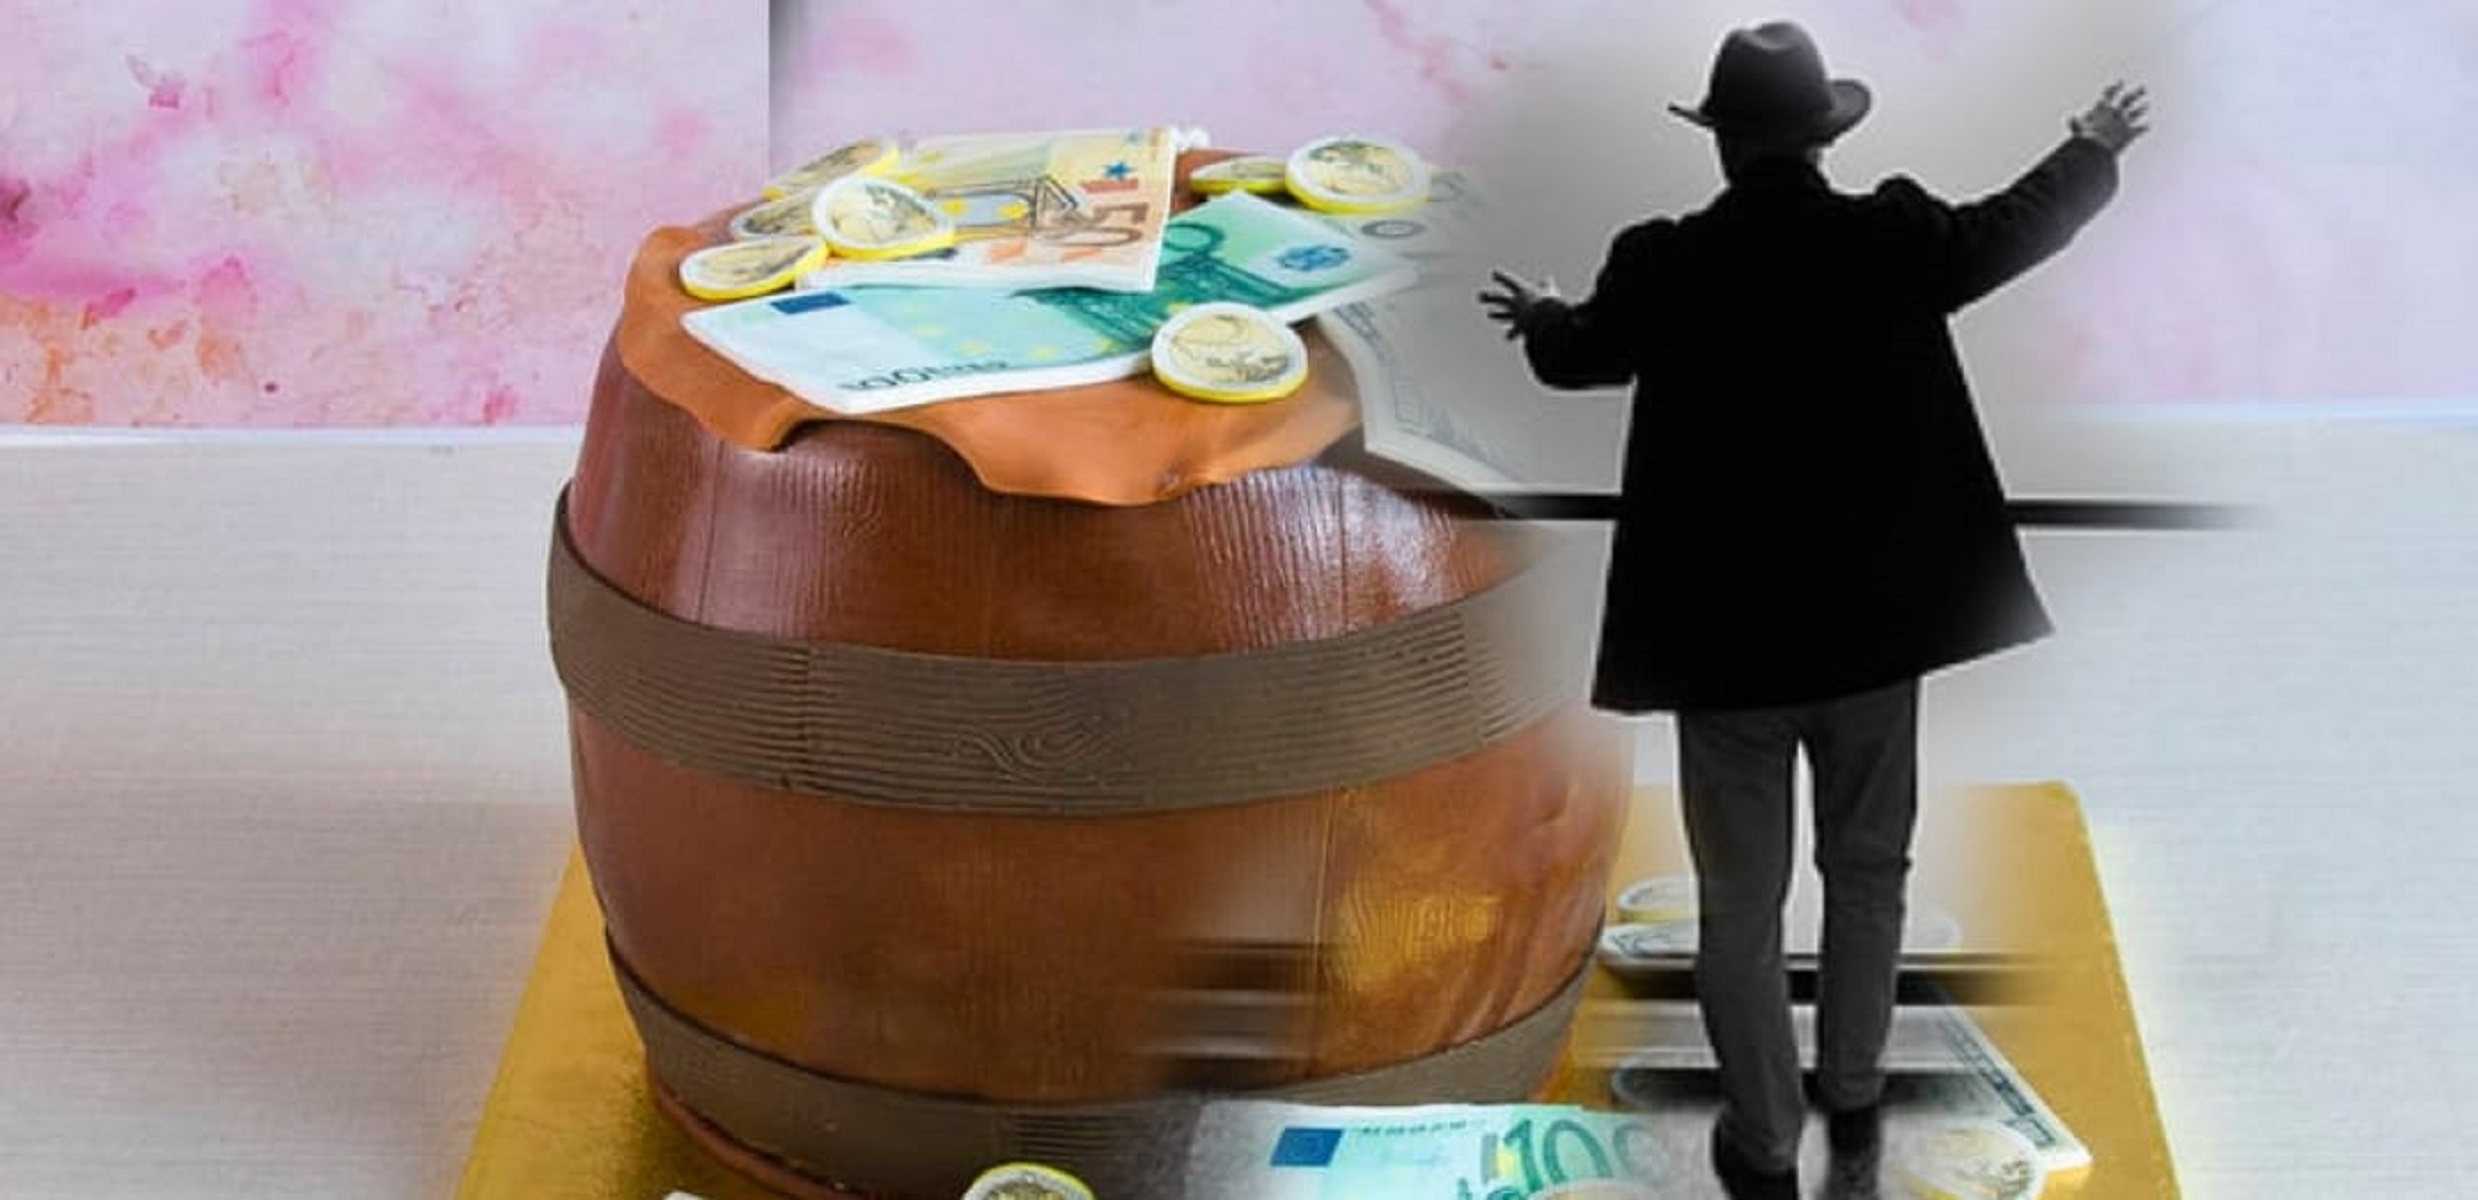 Nu e banc, e realitate! Tu știi ce vedetă din România are ascunse 10 butoaie pline cu euro? VIDEO